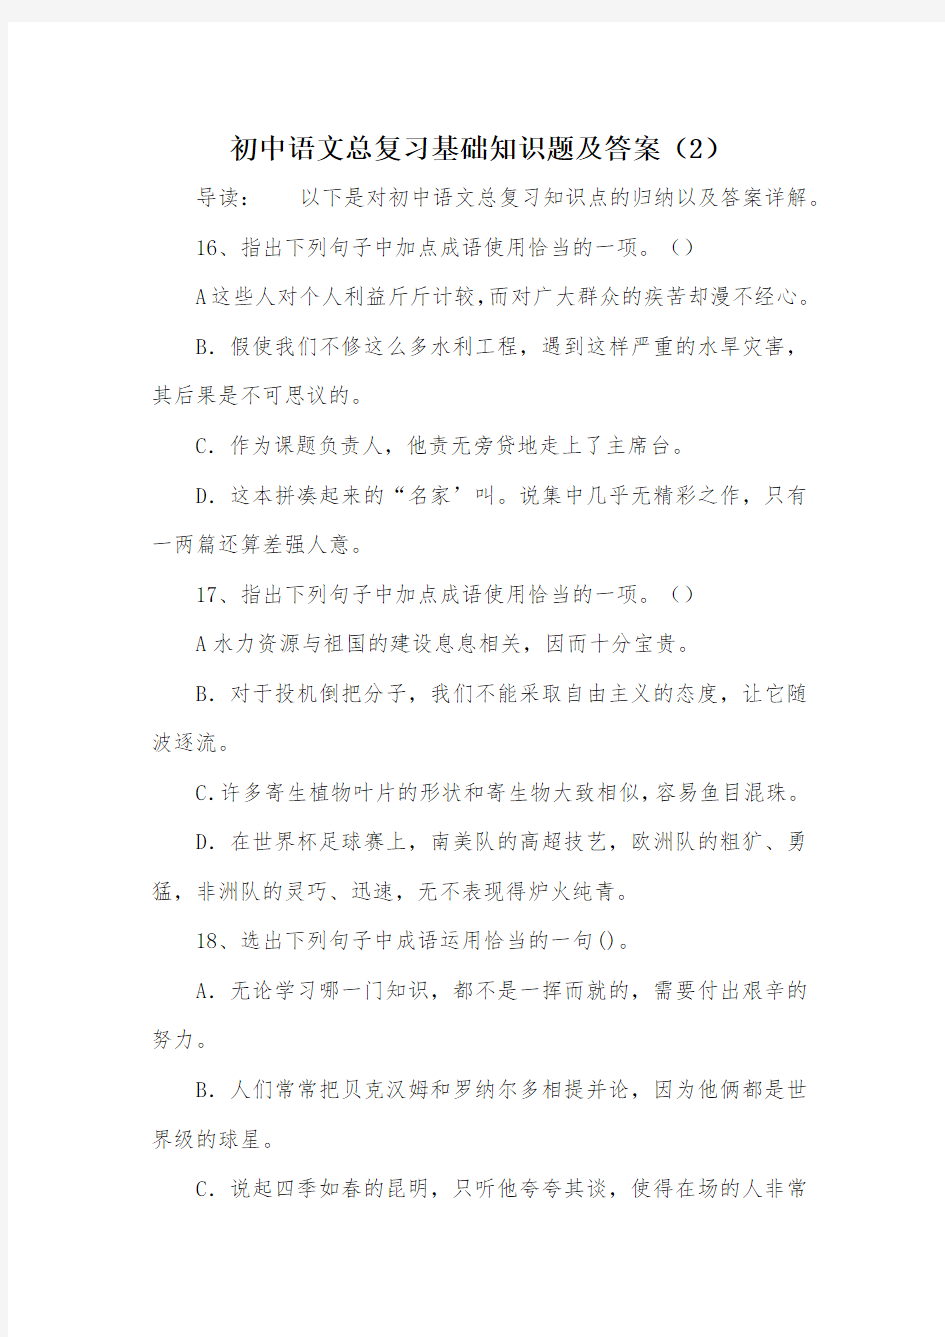 初中语文总复习基础知识题及答案(2)